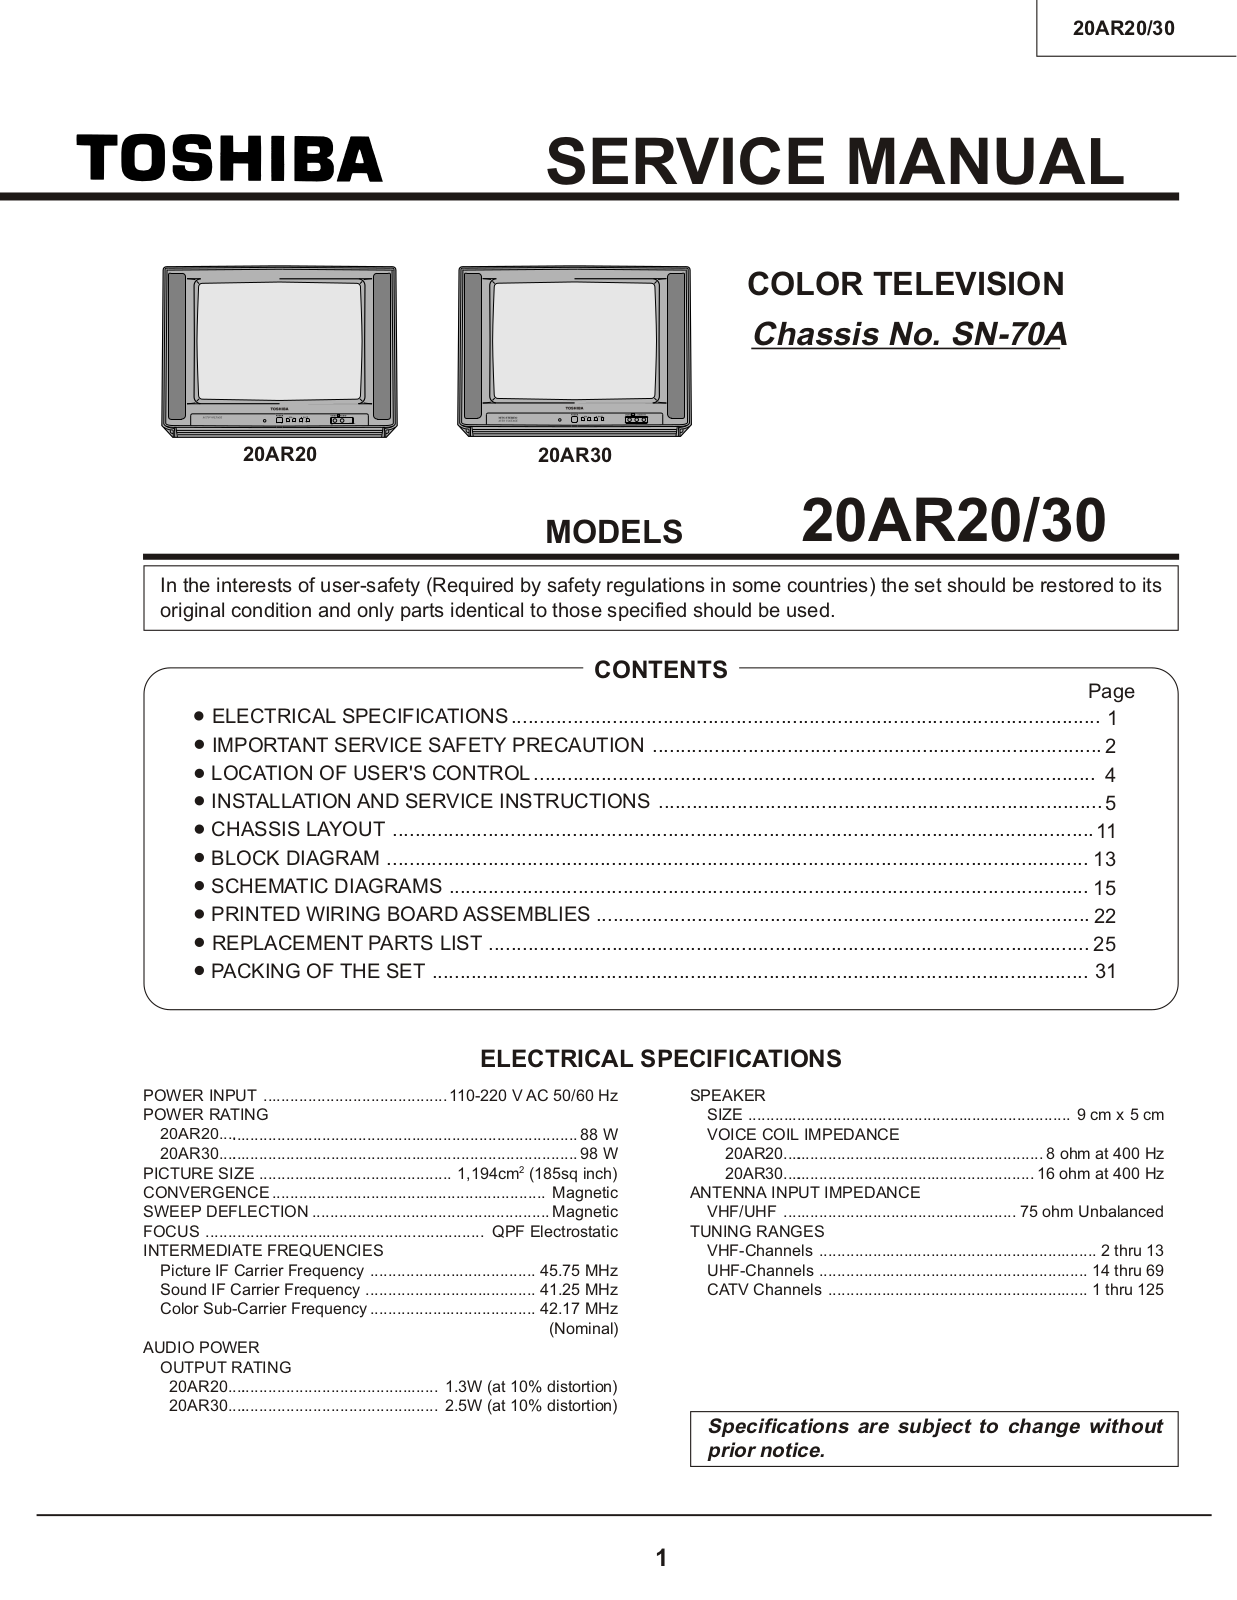 Toshiba 20AR20, 20AR30 Service Manual